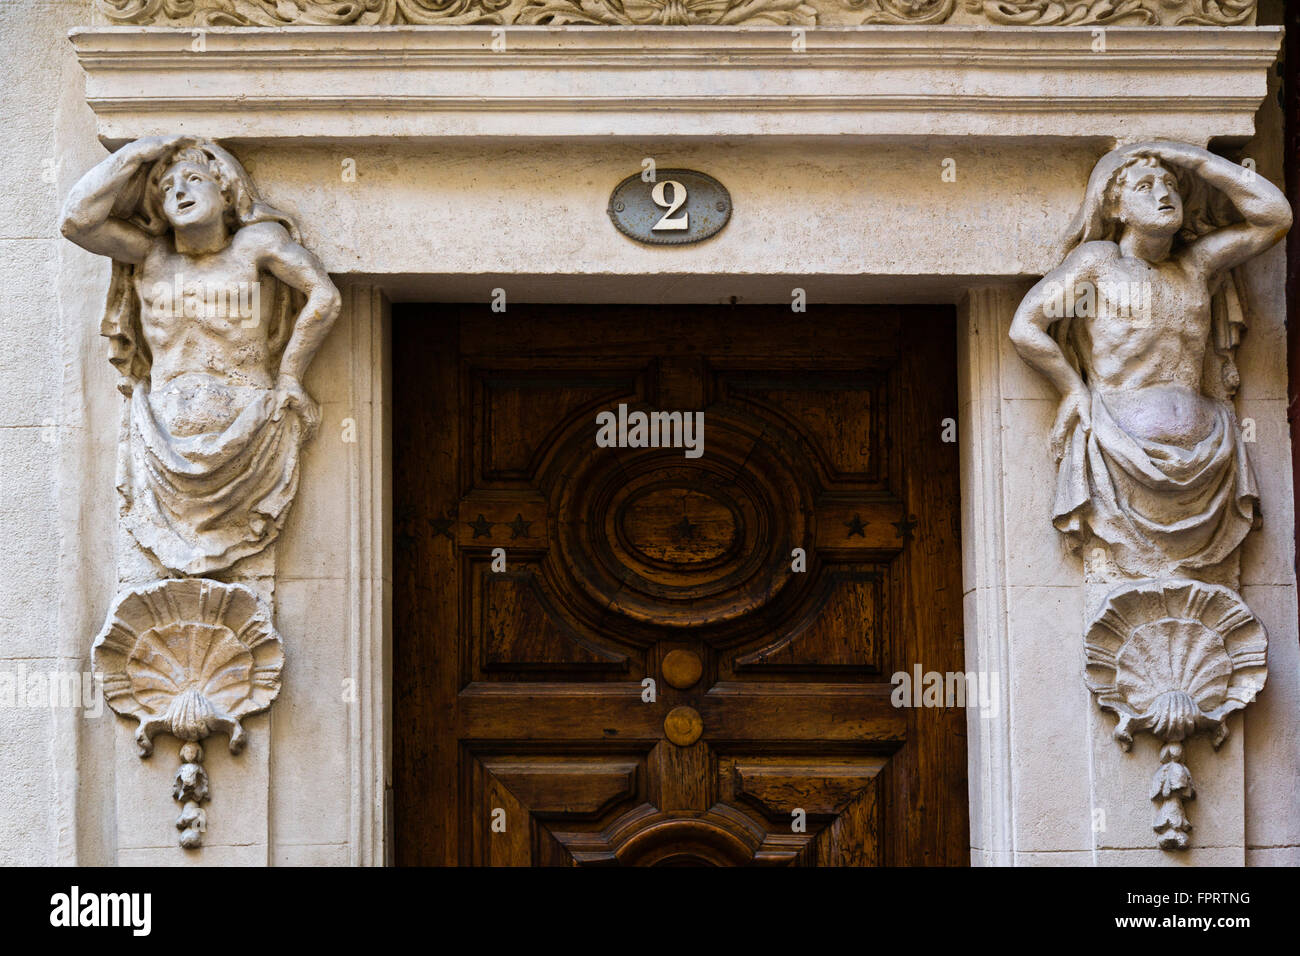 The house of Atlantes, Plan de l Aspic, Nimes, Gard, France Stock Photo